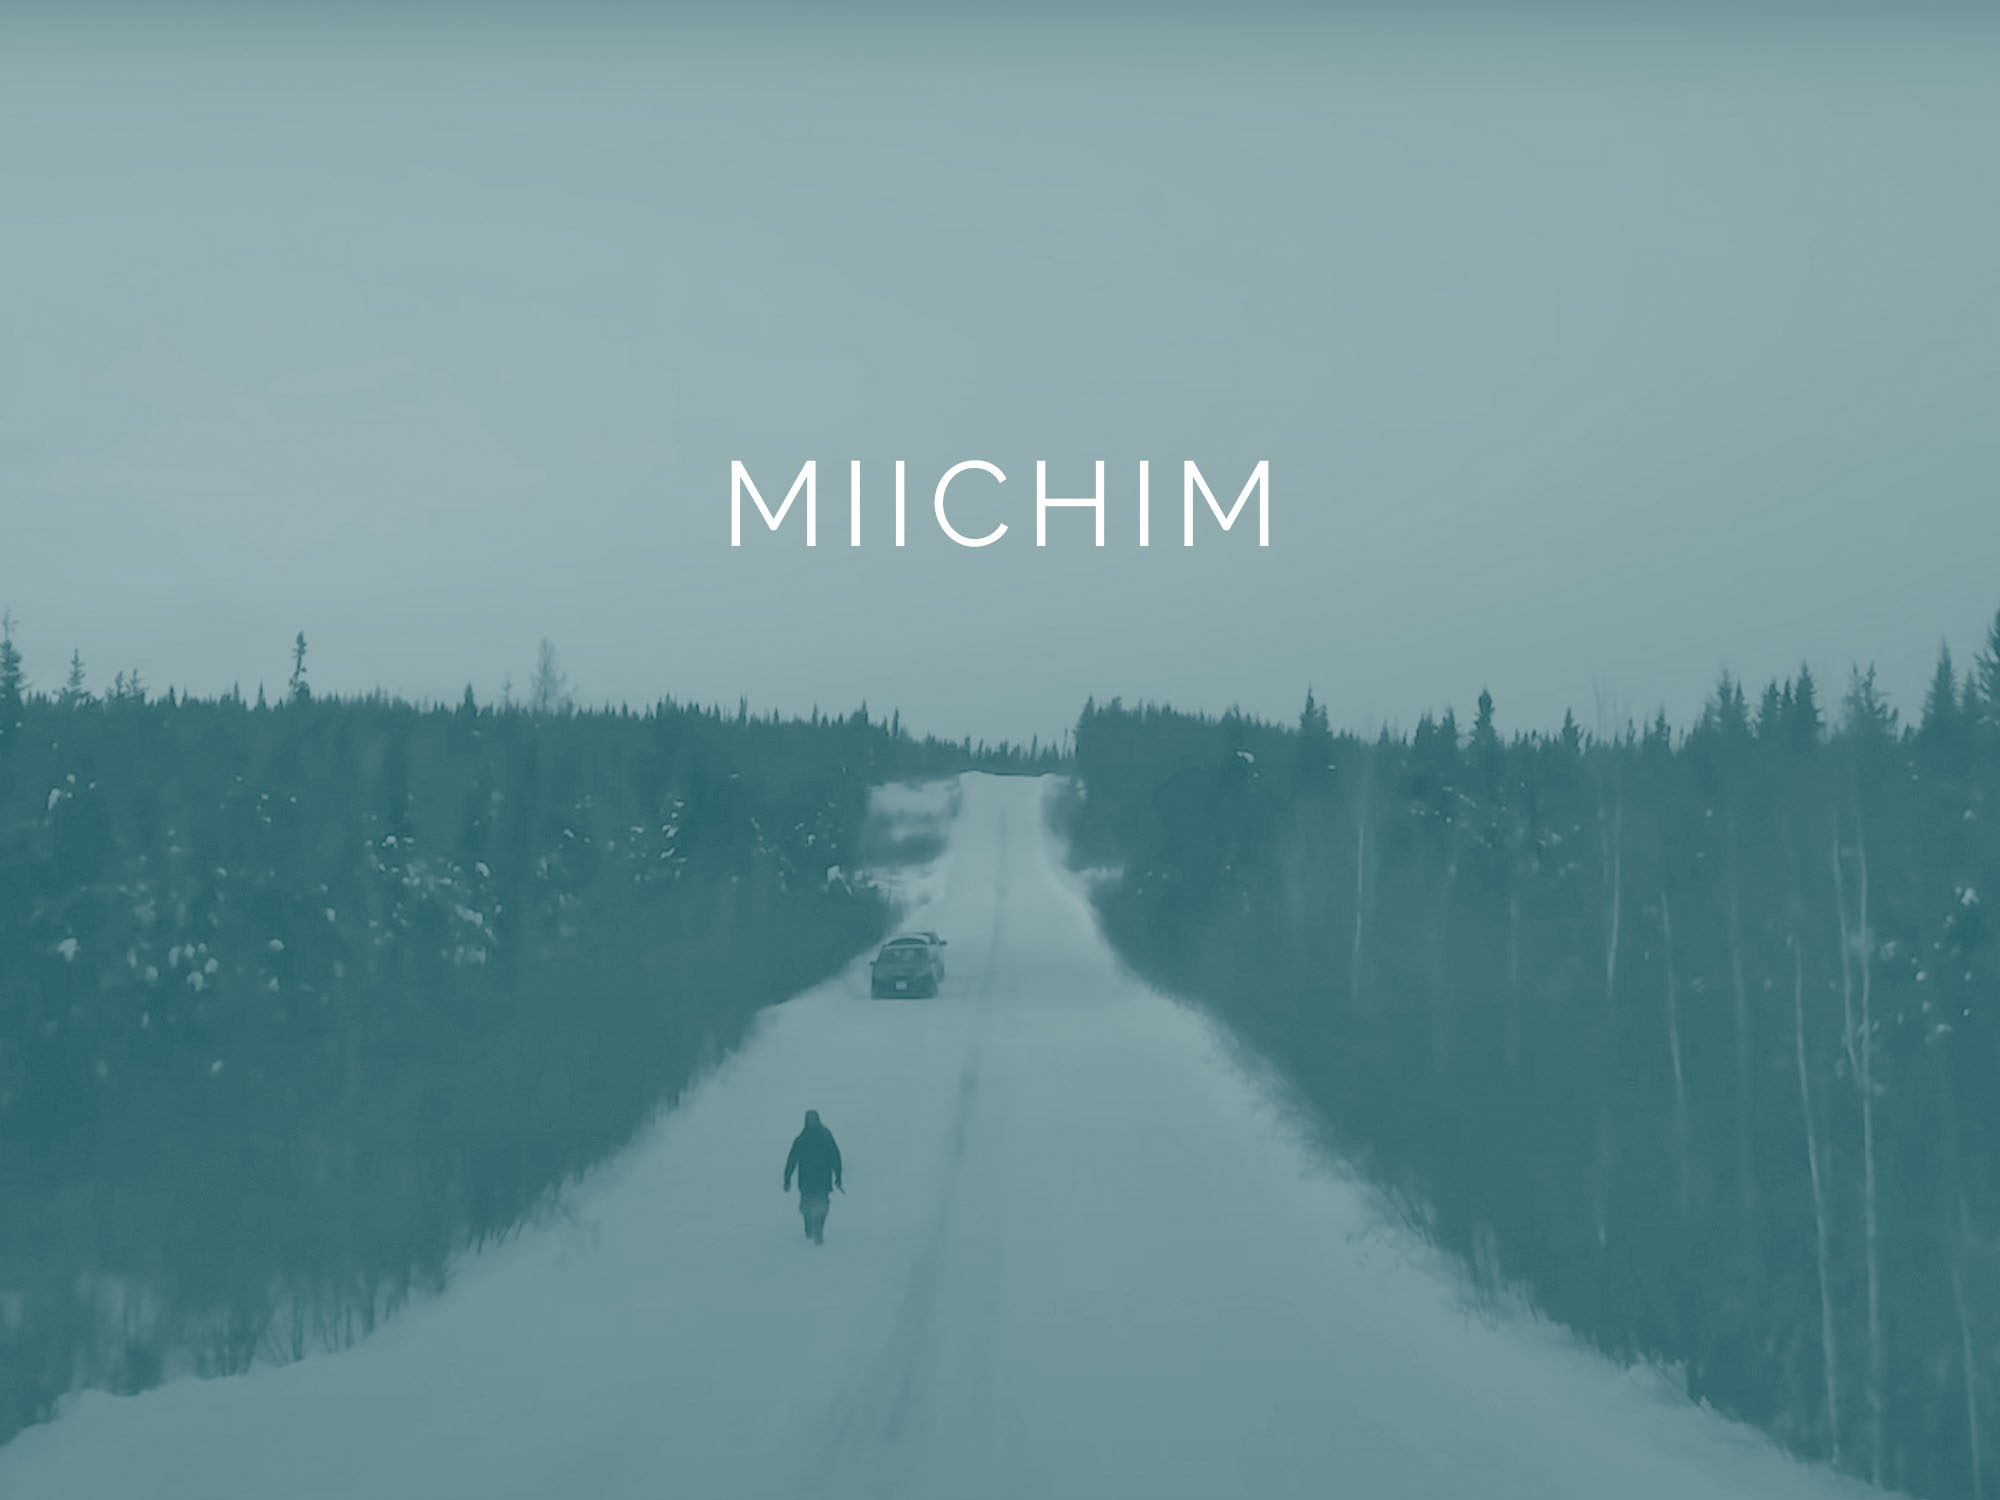 Miichim title card